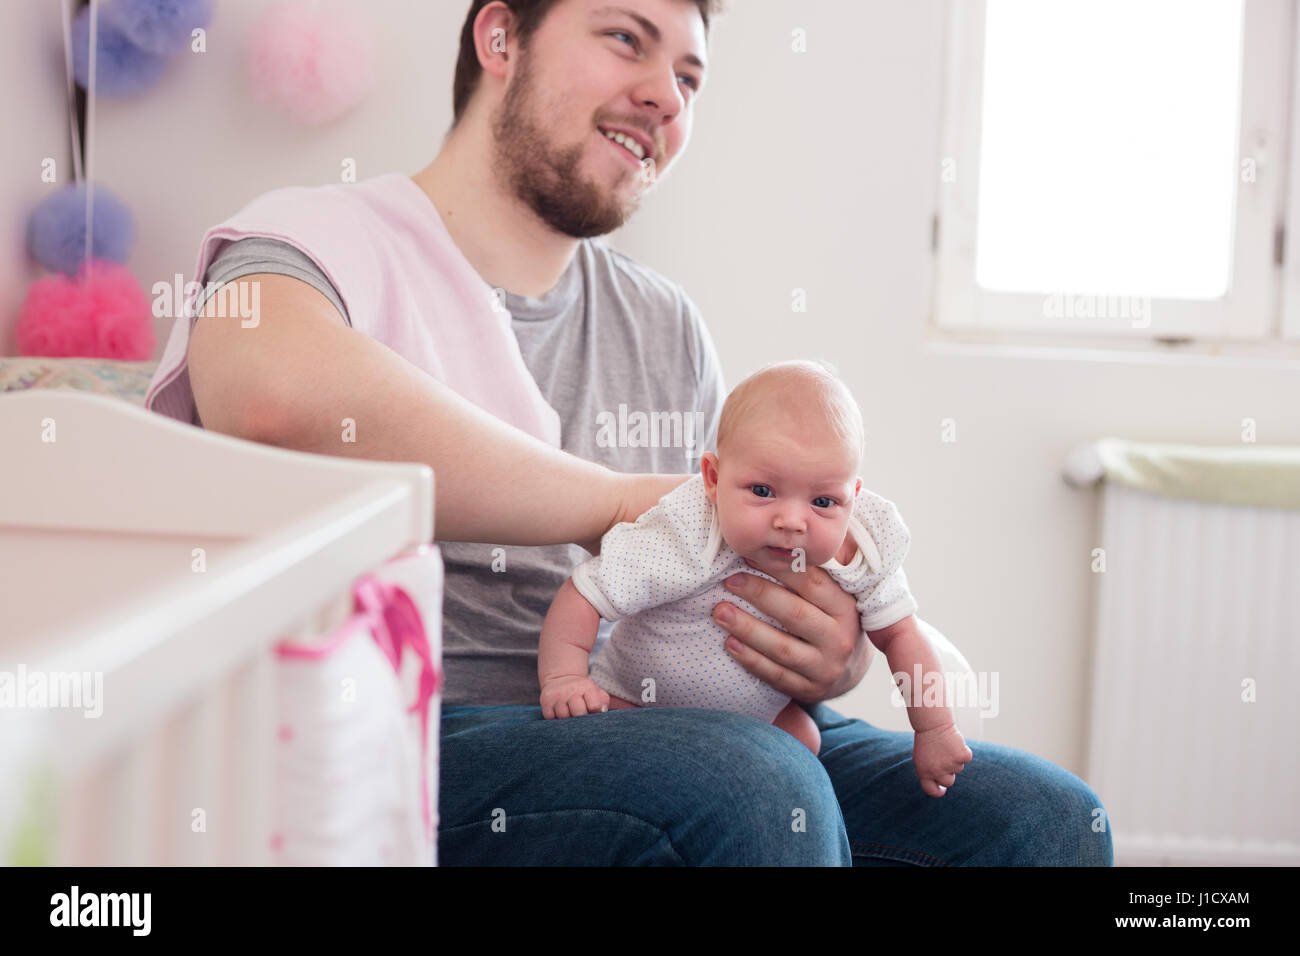 Junger Vater seine neugeborene Tochter, hielt sie liebevoll Aufstoßen. Lifestyle-Familie-Sitzung... Stockfoto